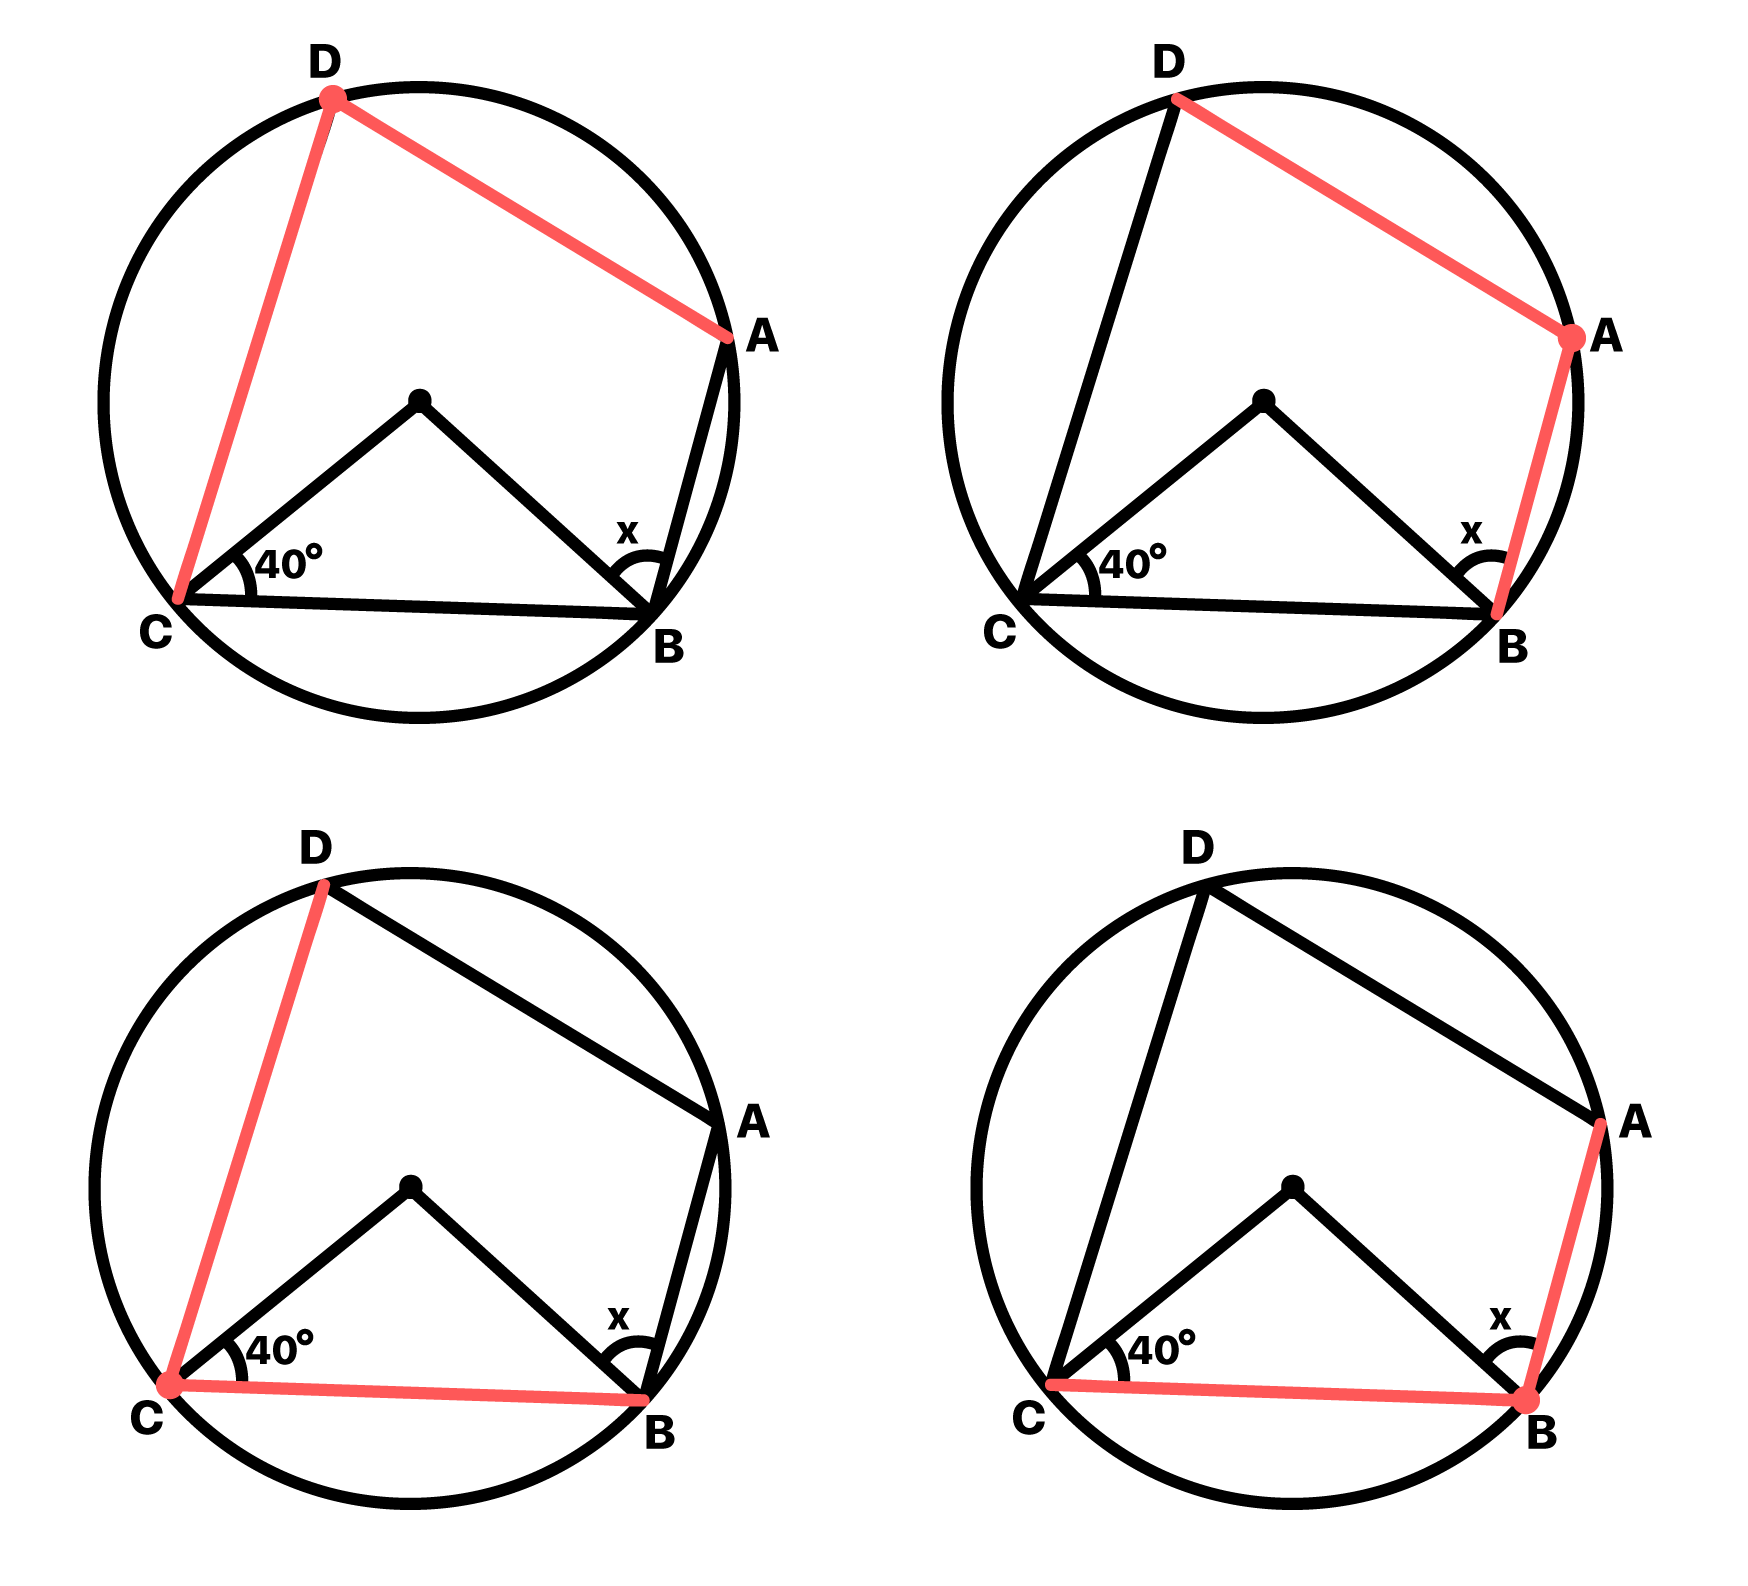 4 vértices do quadrilátero são 4 vértices de ângulos inscritos